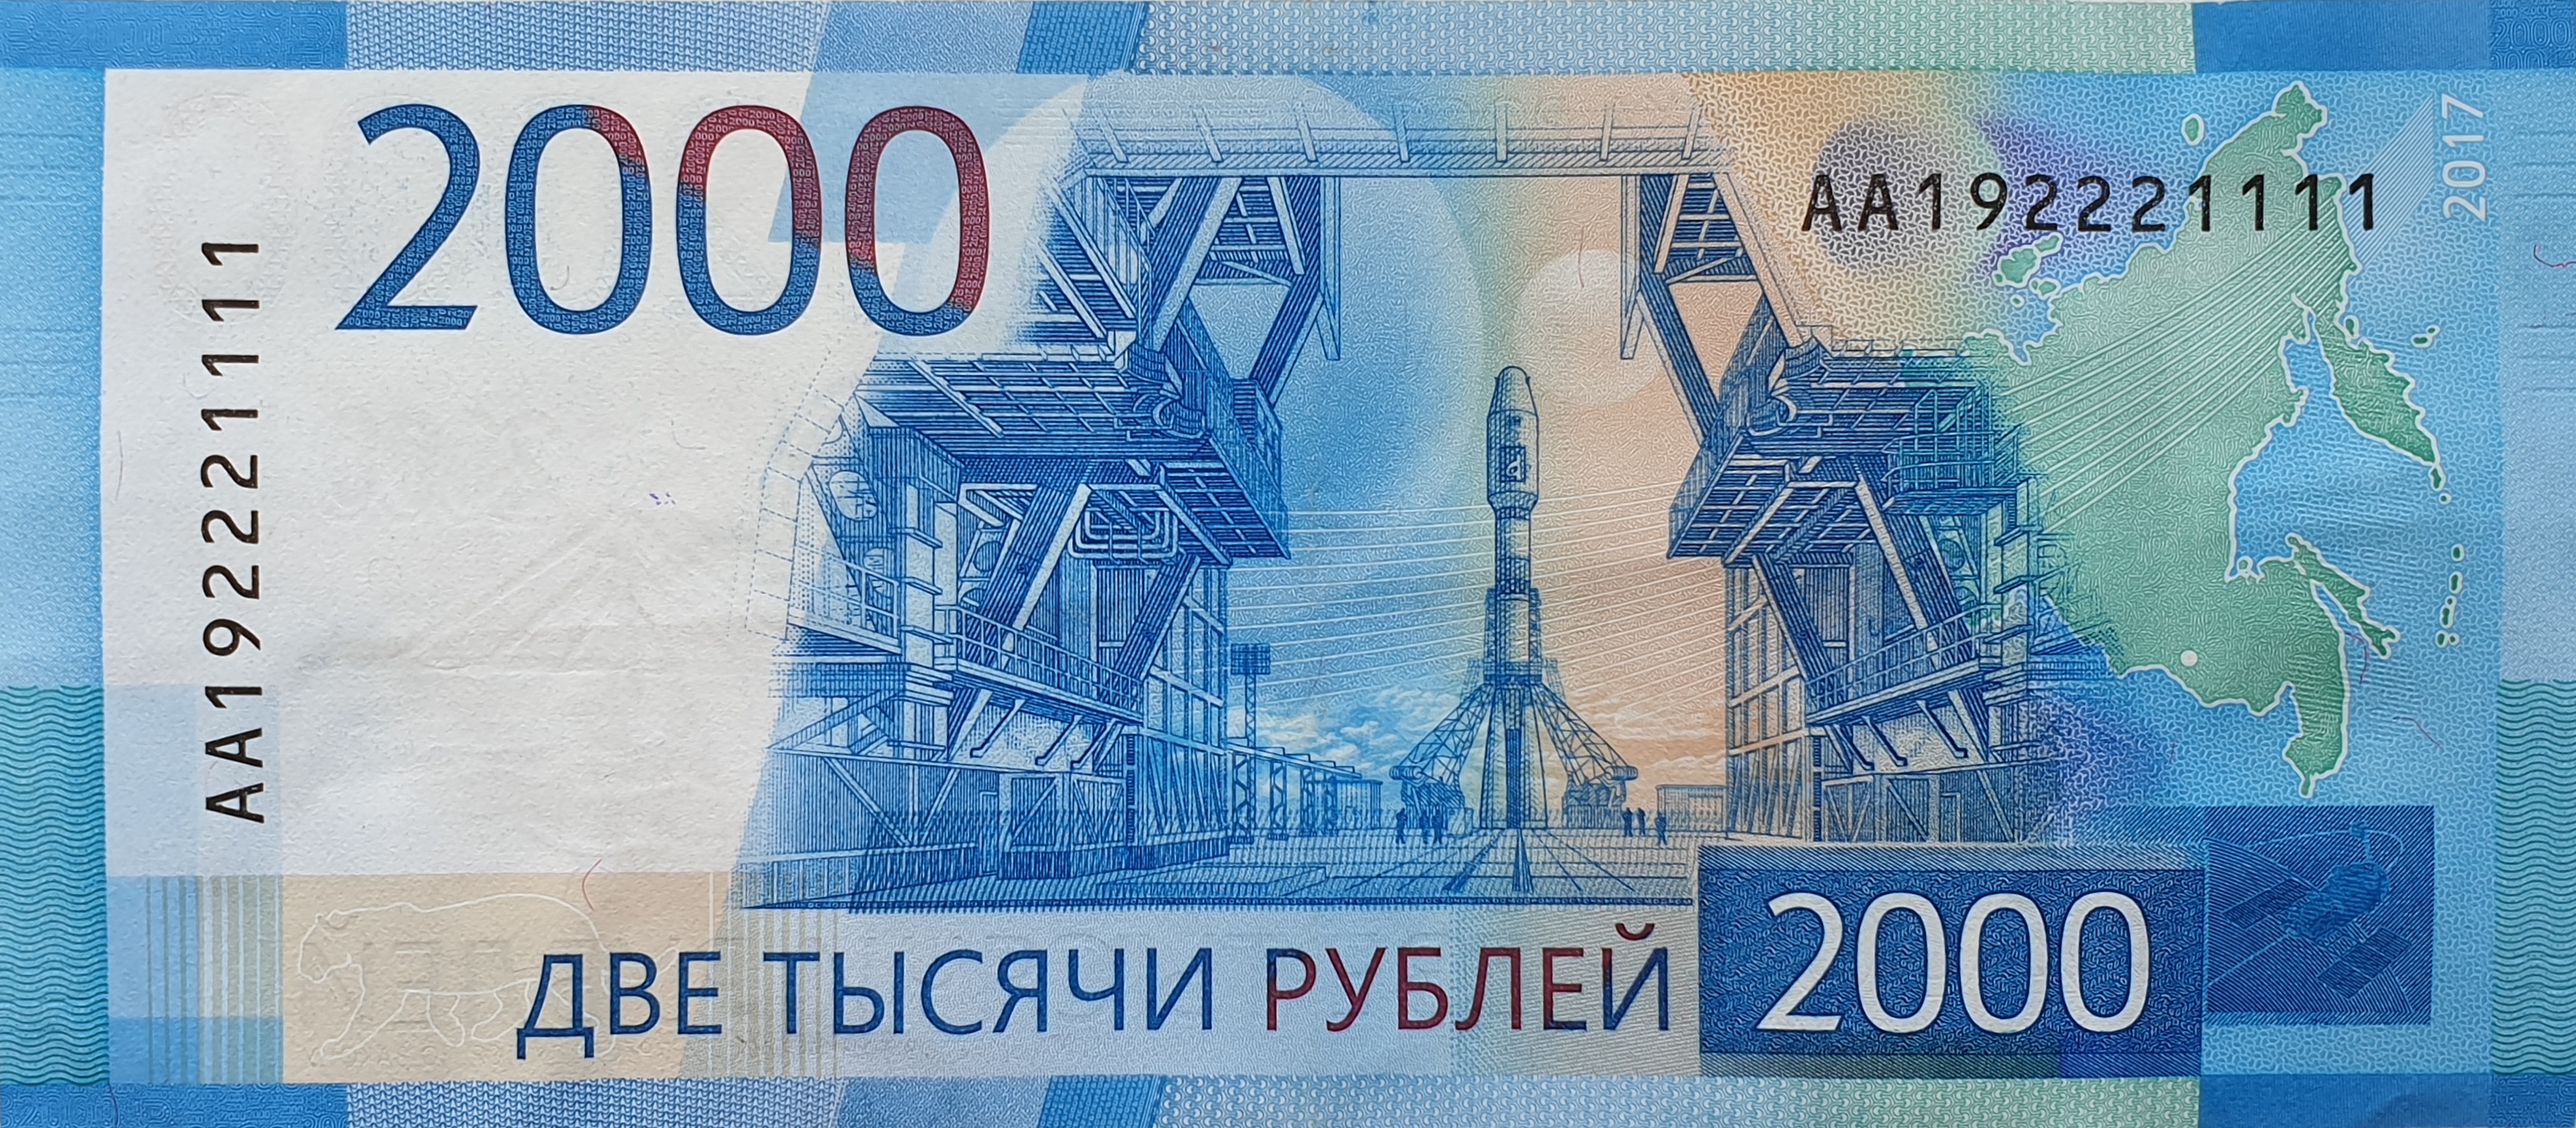 Банкноты России 2000 рублей